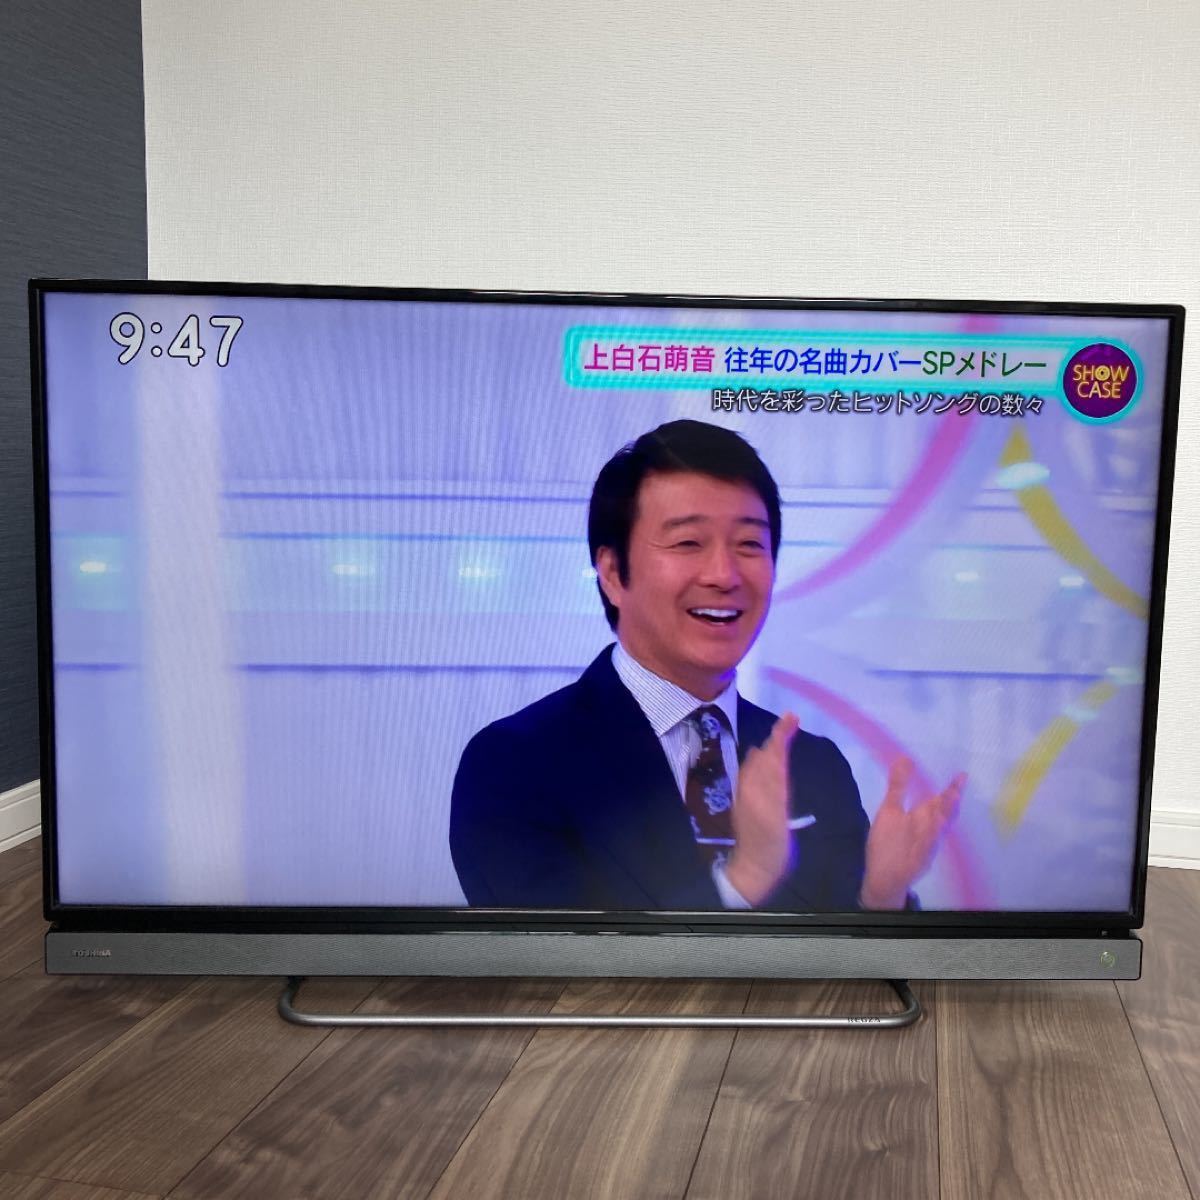 【東芝 40型 液晶テレビ】TOSHIBA REGZA 40V30